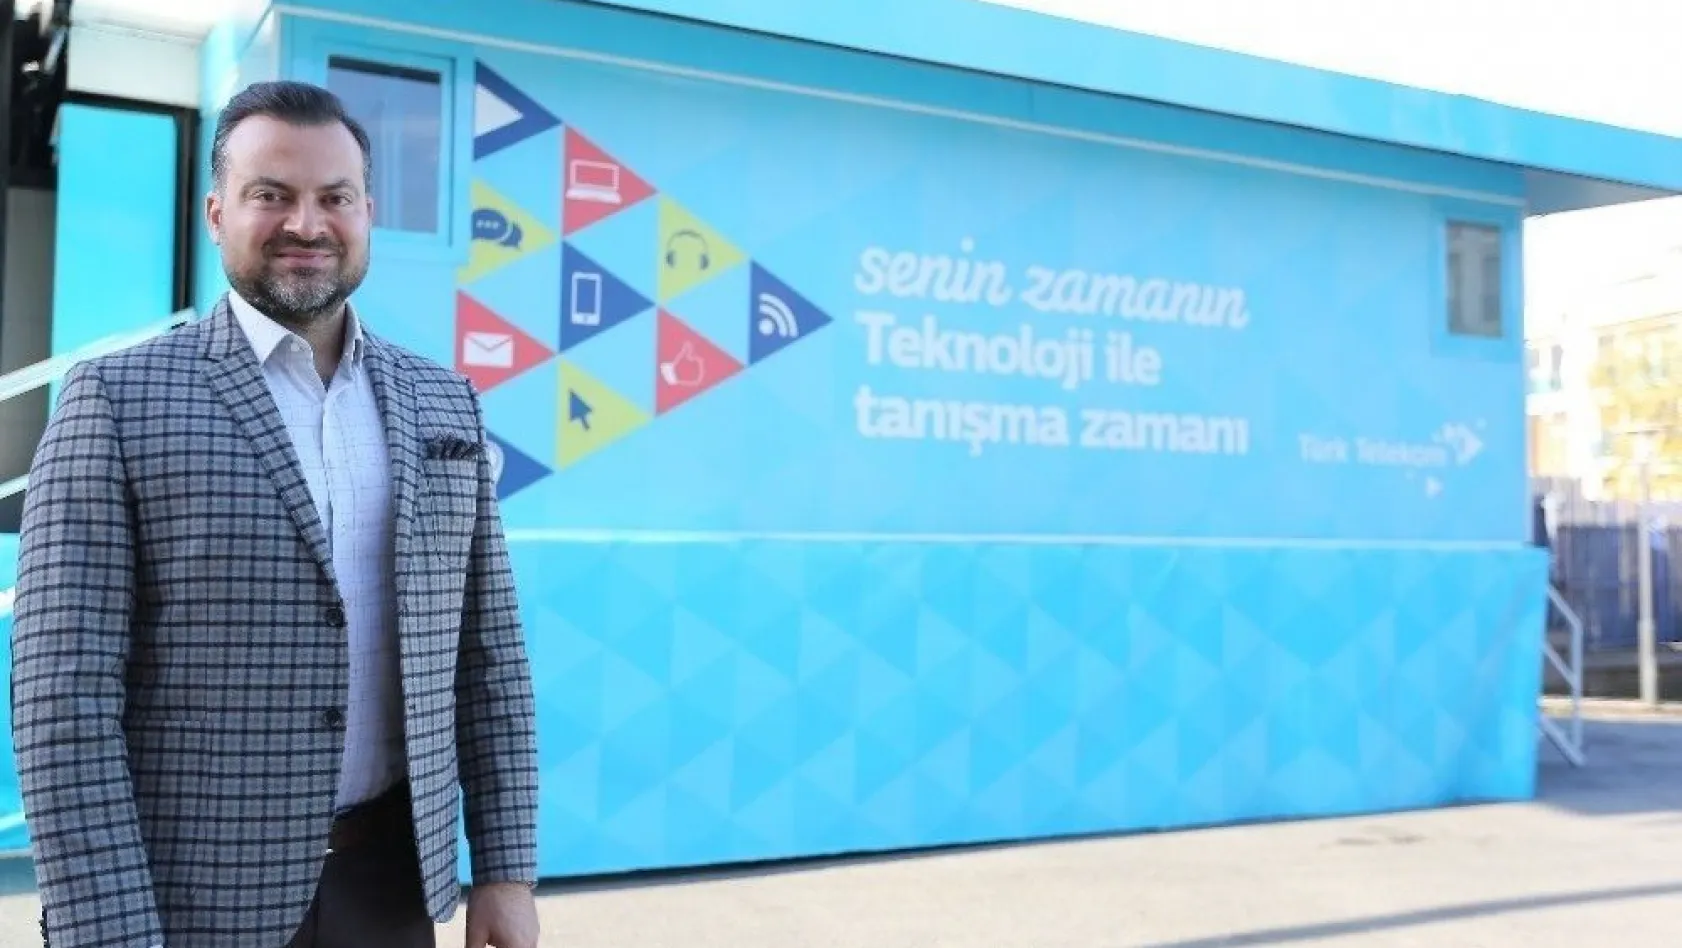 Türk Telekom Teknoloji Seferberliği'nin İlk durağı Erzincan oldu
